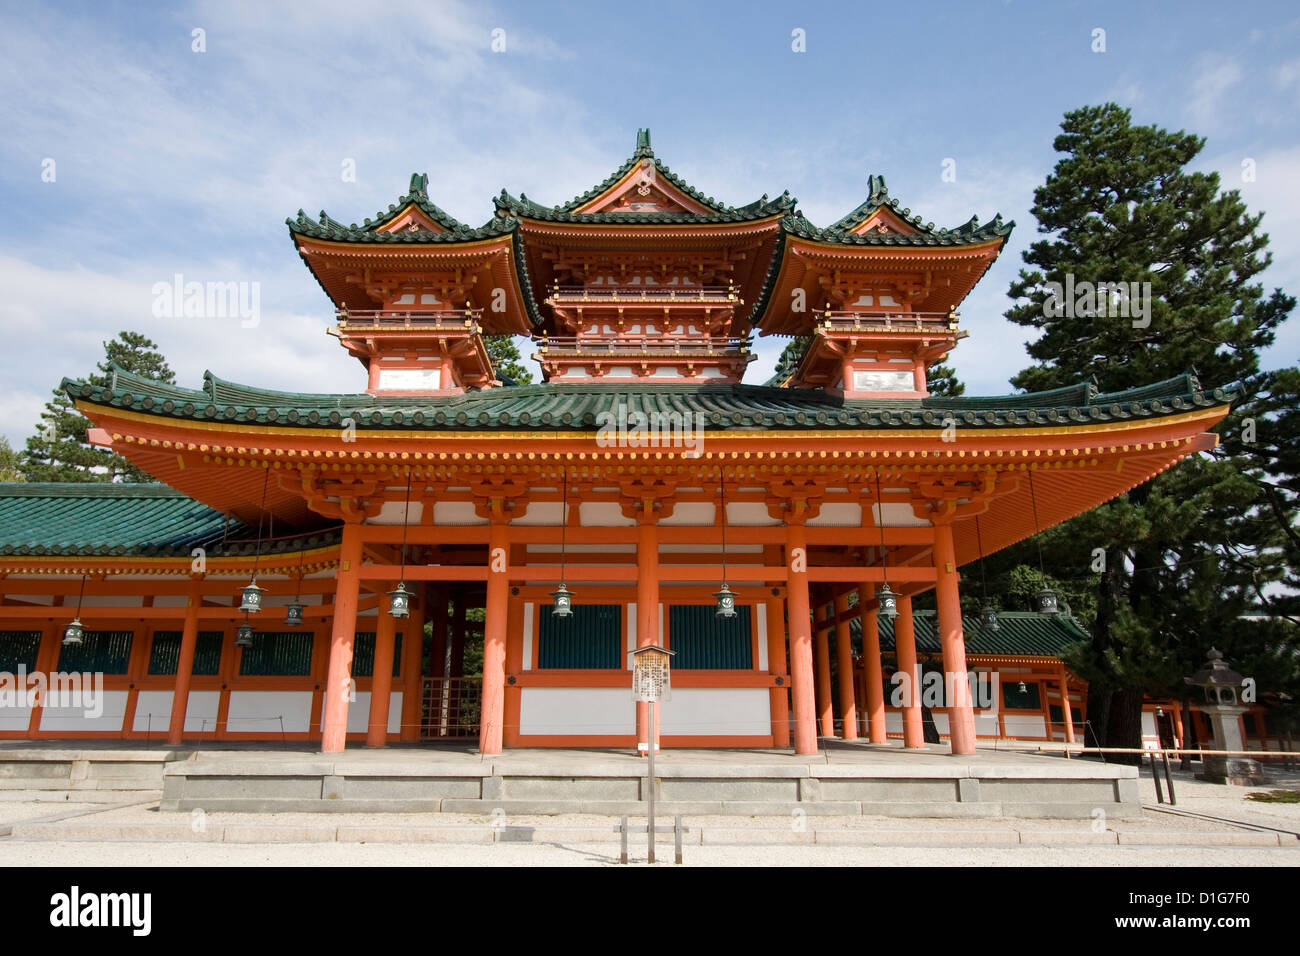 The UNESCO Ancient Shinto Shimogamo Shrine (also known as Shimogamo-jinja) in Kyoto, Japan. Stock Photo